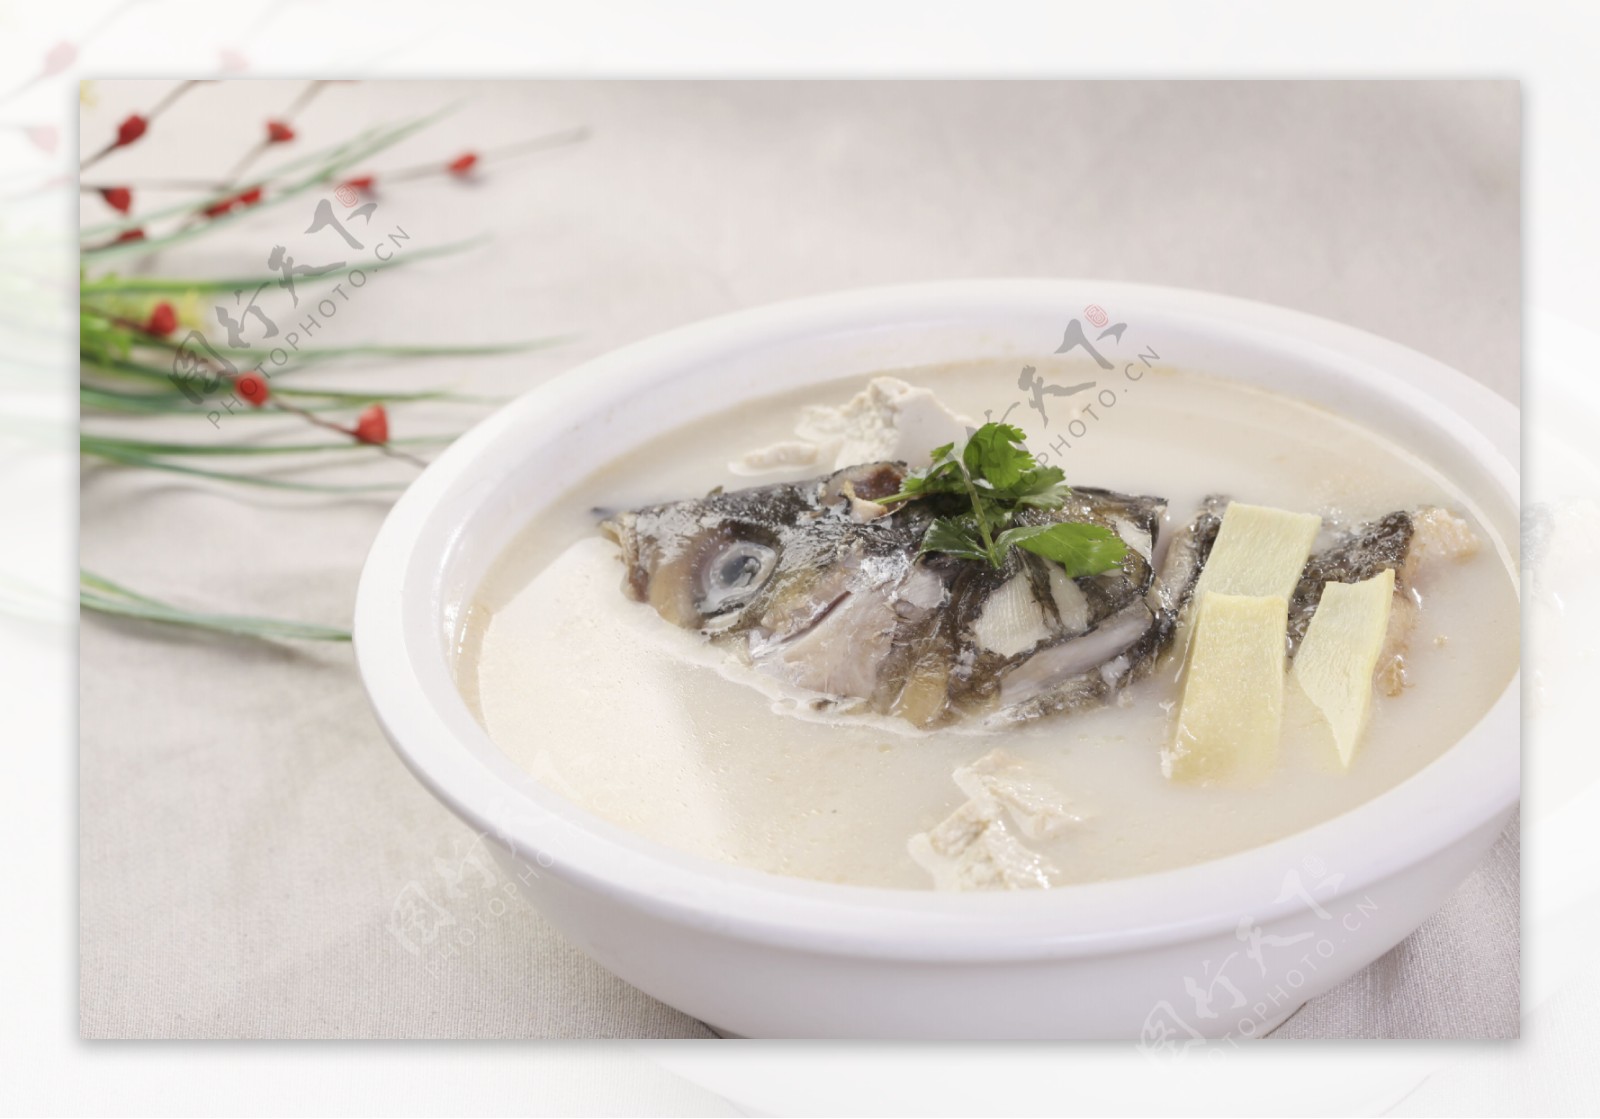 煮鱼头豆腐汤怎么做_ 煮鱼头豆腐汤的正宗做法 - 重庆小潘seo博客